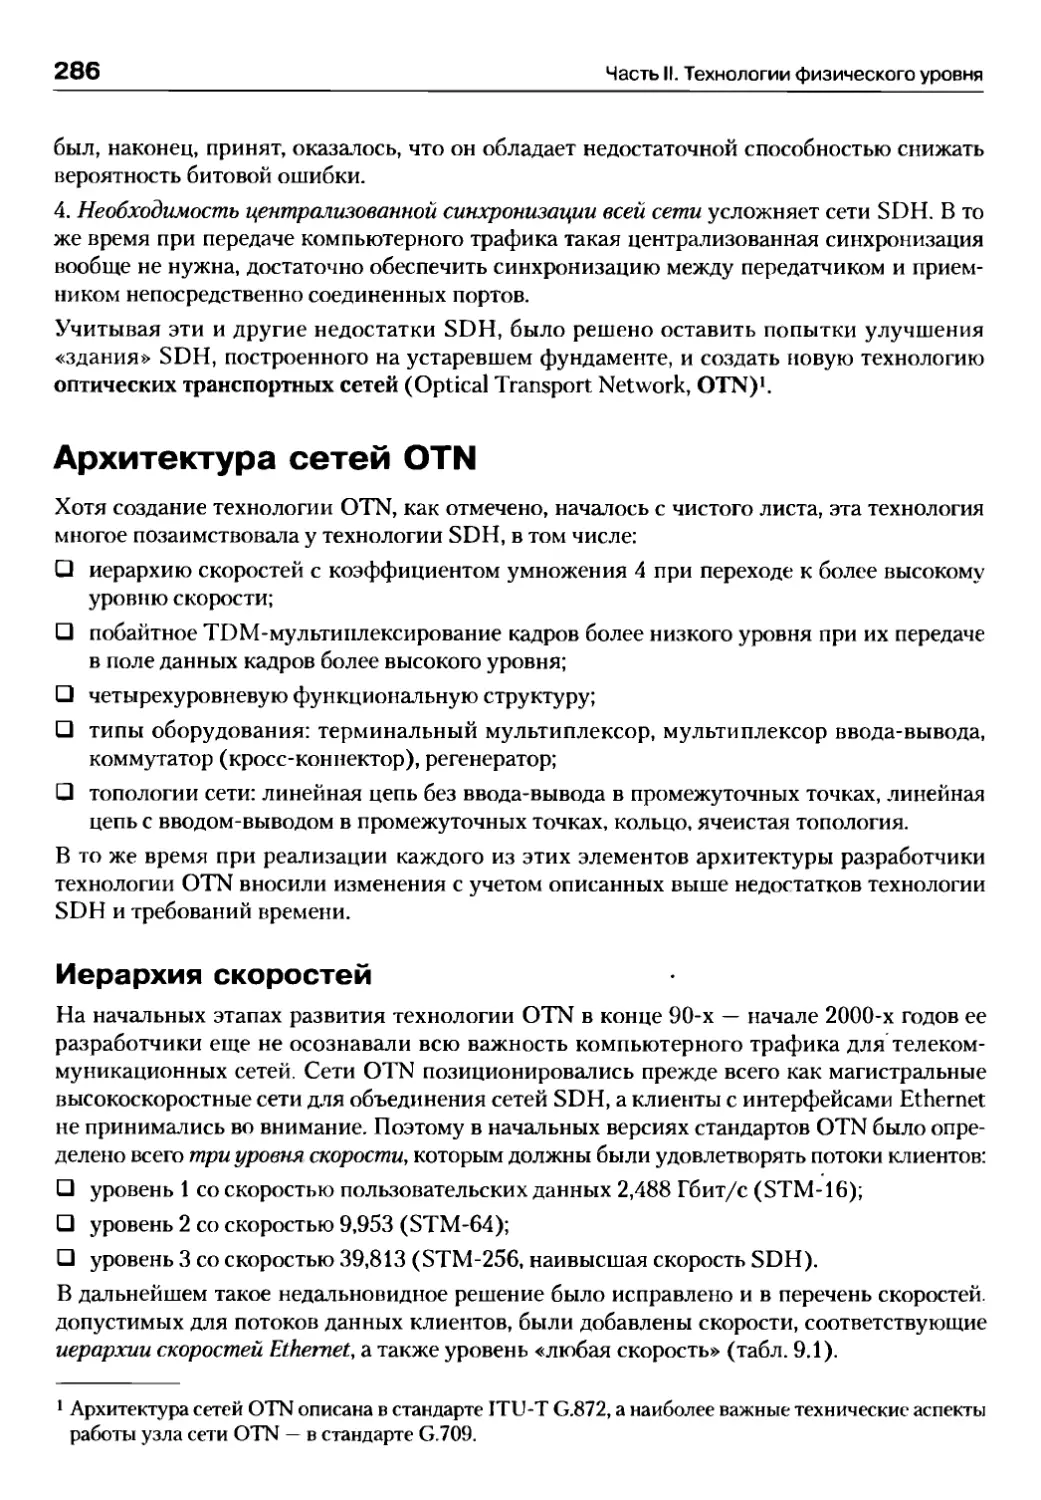 Архитектура сетей OTN